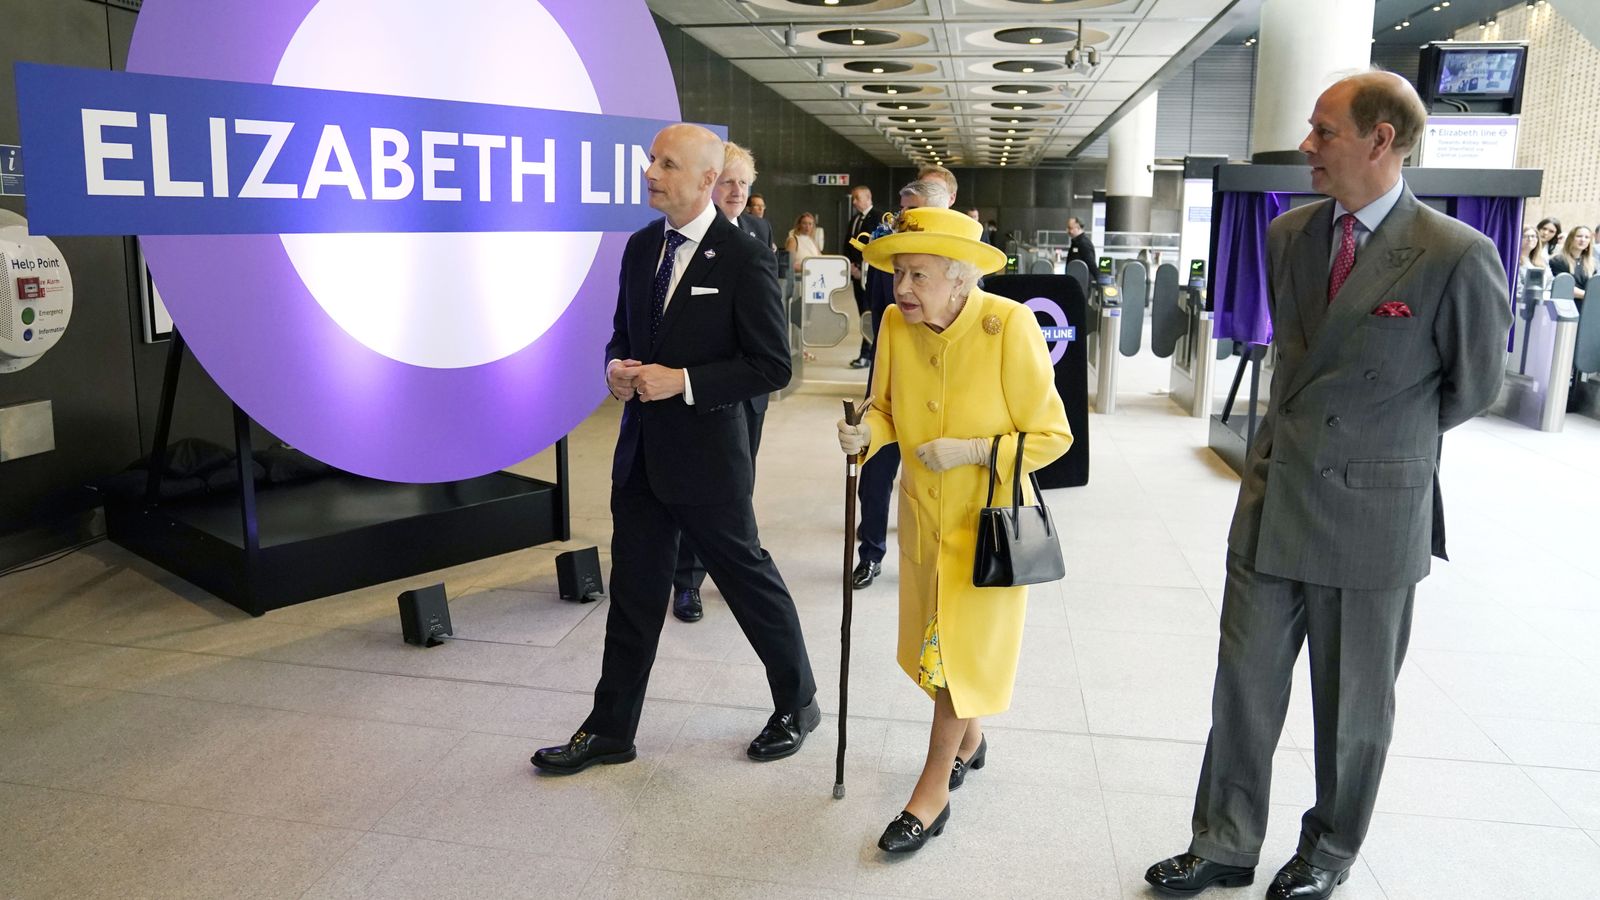 كوين تبدو متفاجئة بافتتاح تشكيلة إليزابيث جديدة في لندن |  أخبار المملكة المتحدة